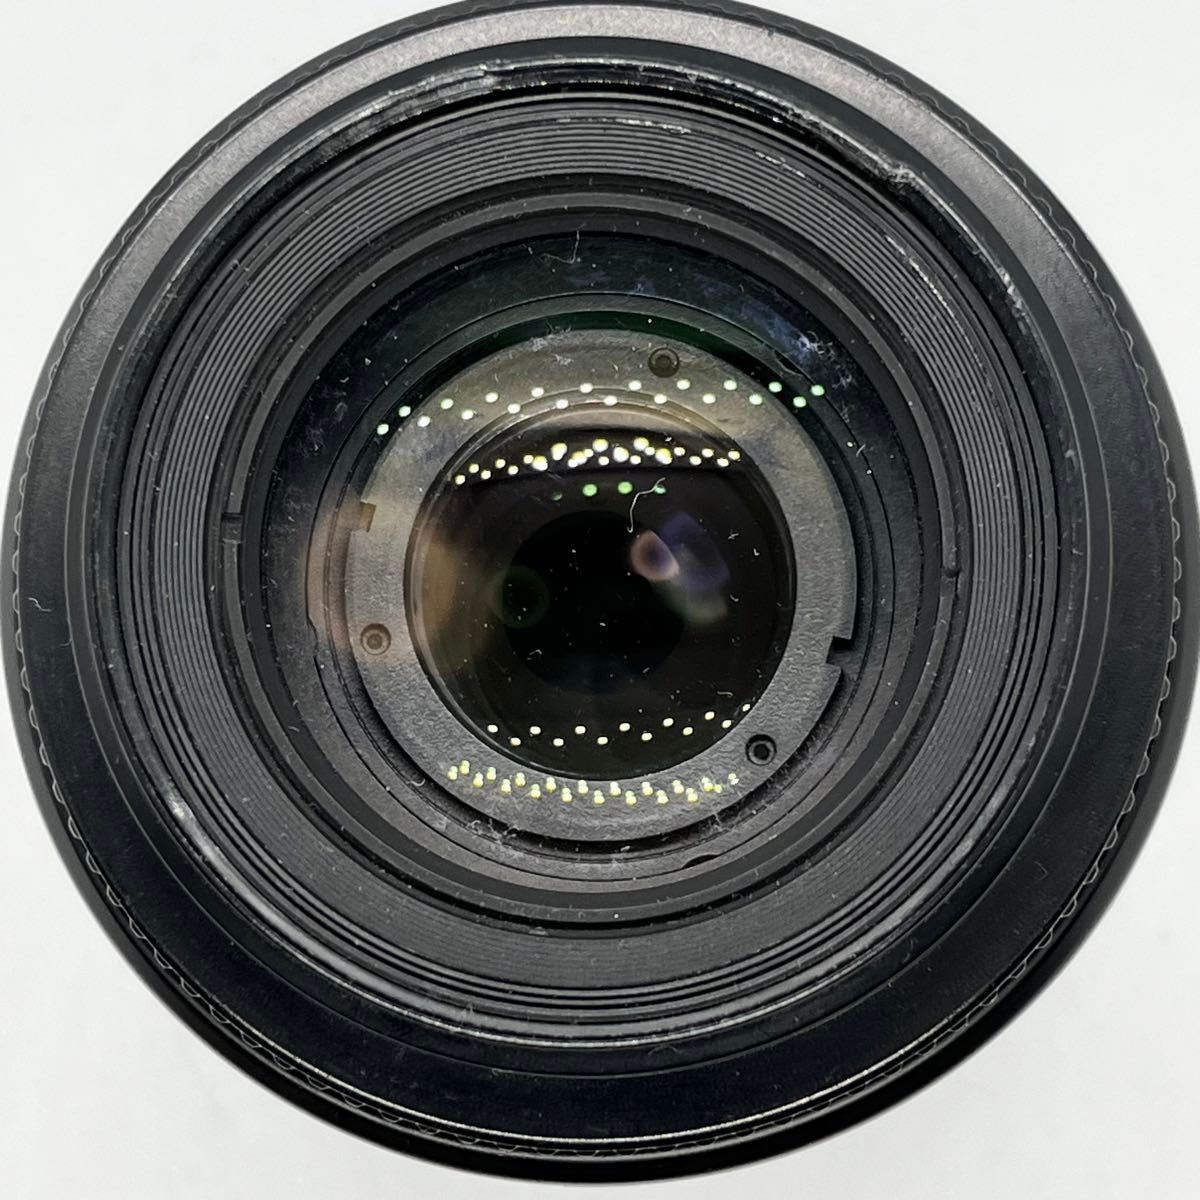 Nikon AF NIKKOR 80-200mm f4.5-5.6D